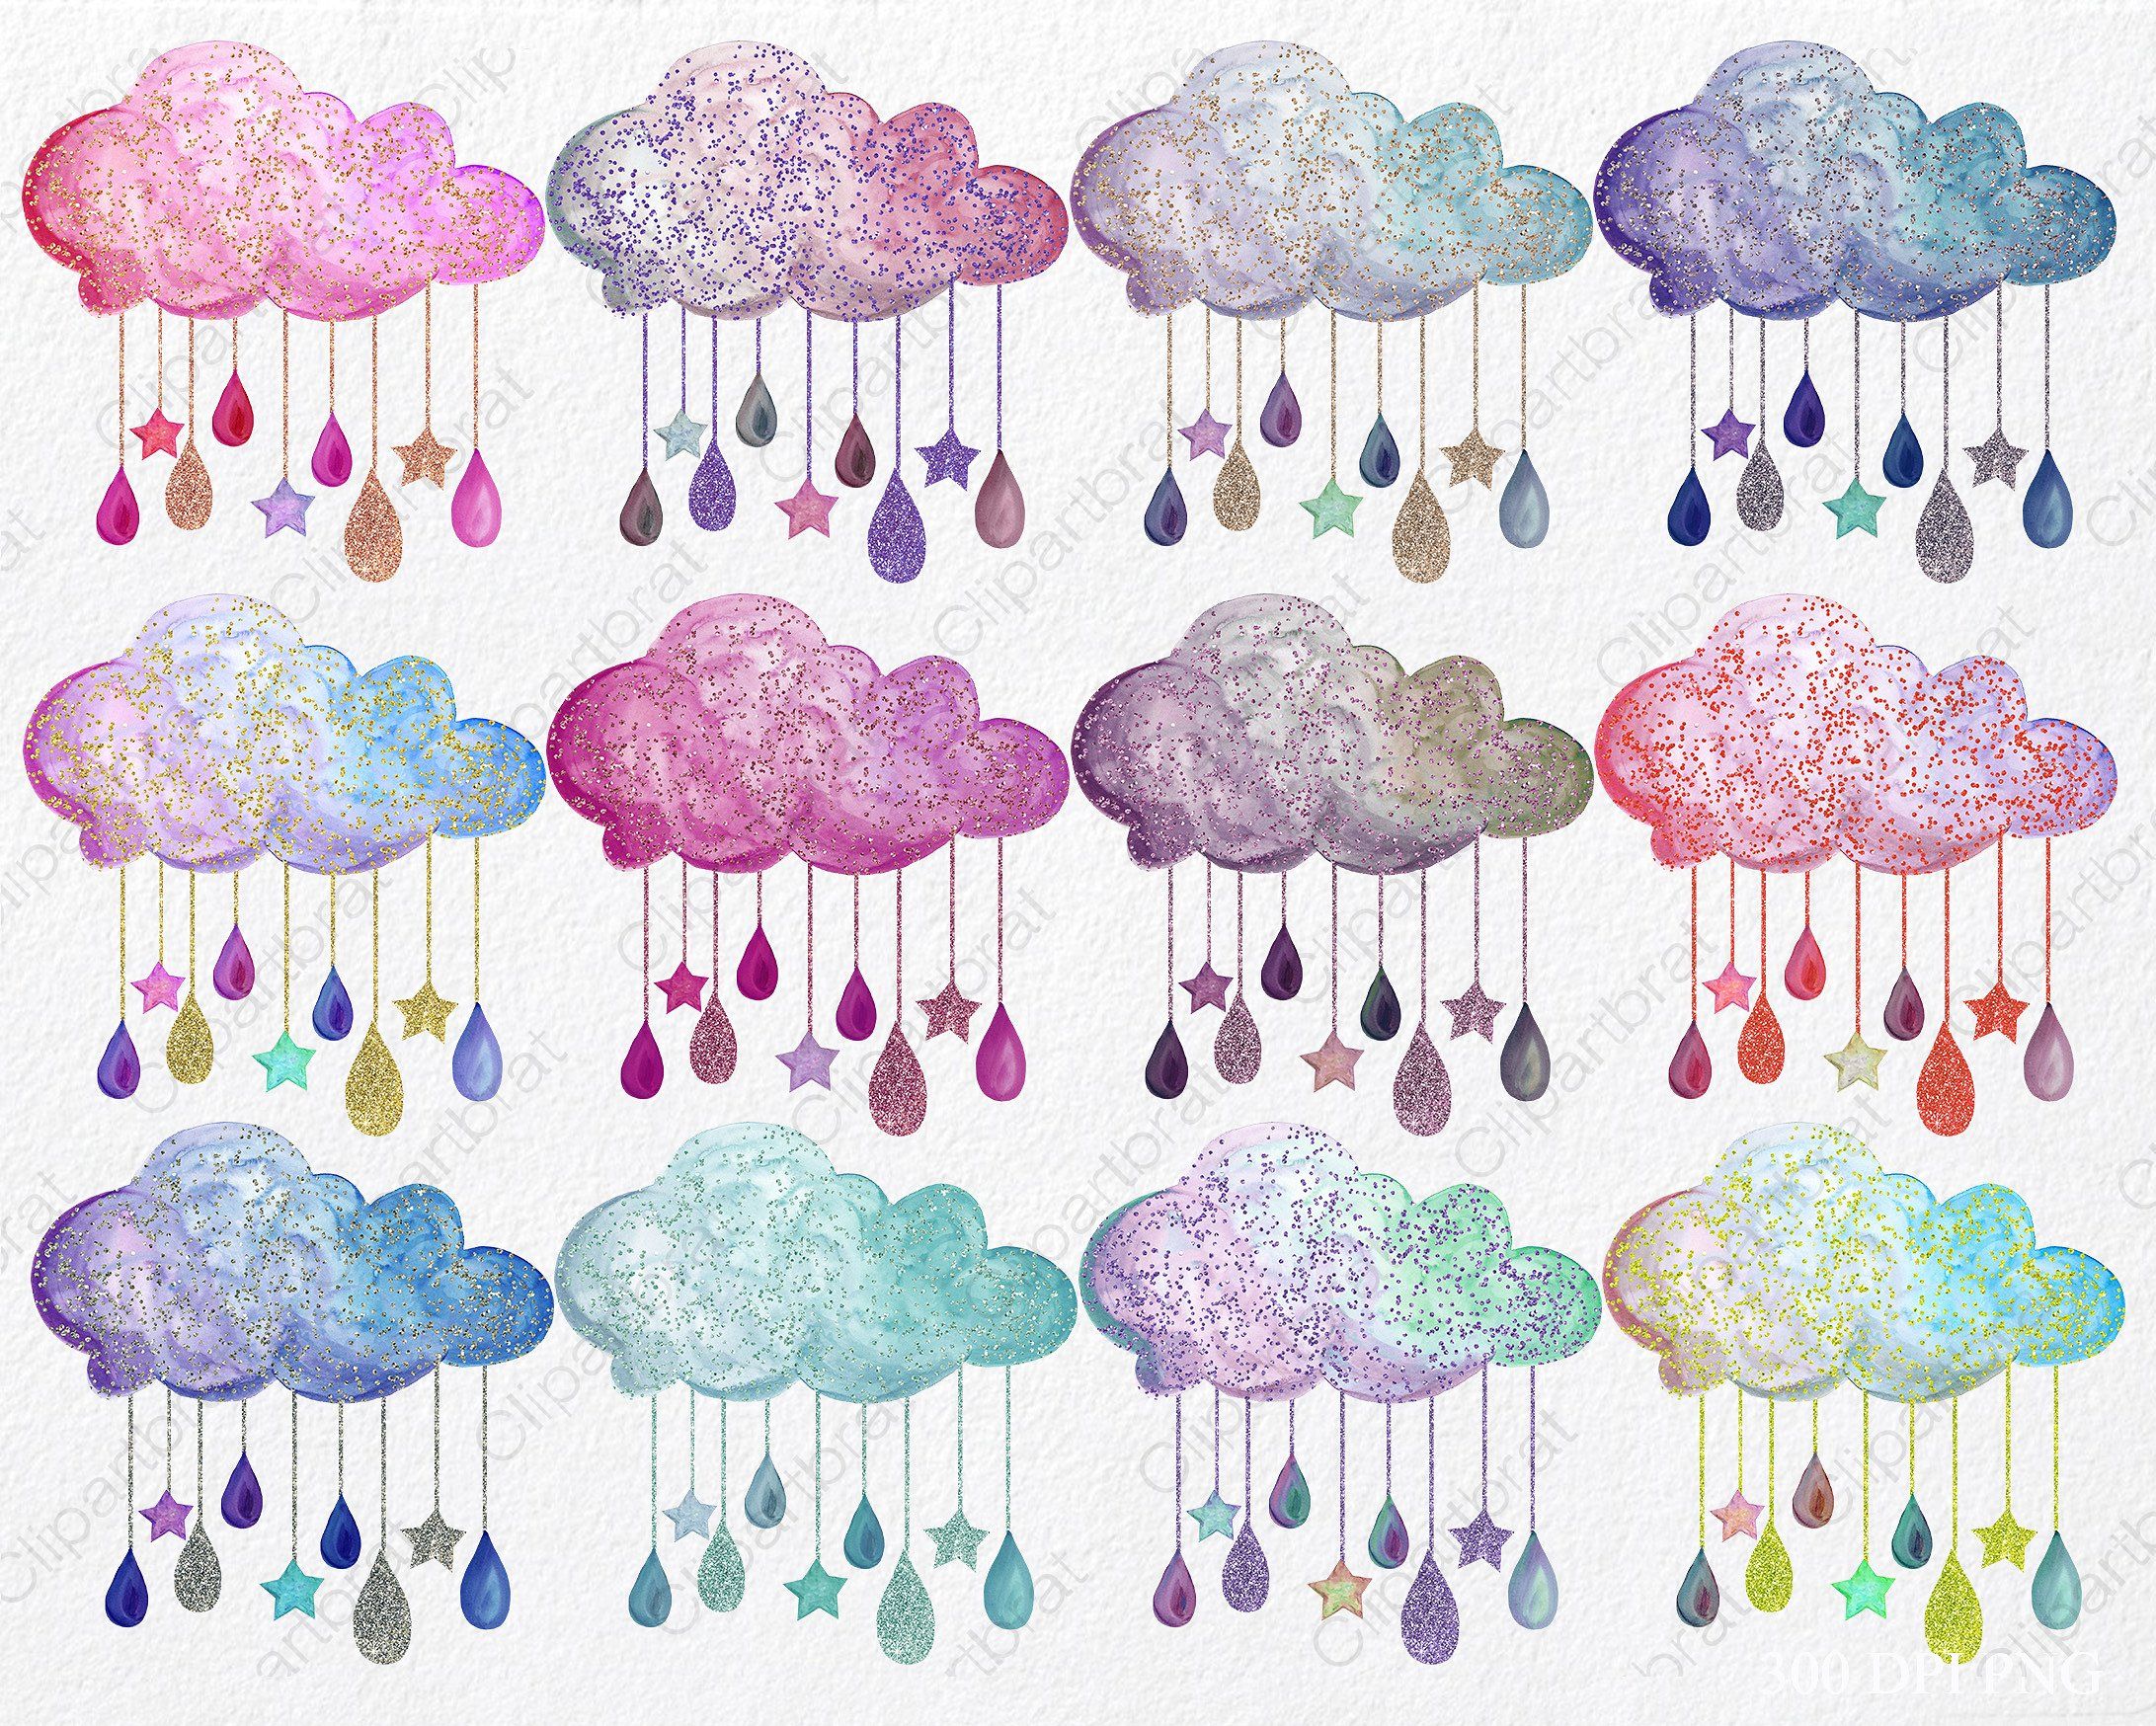 Cute watercolor rain.